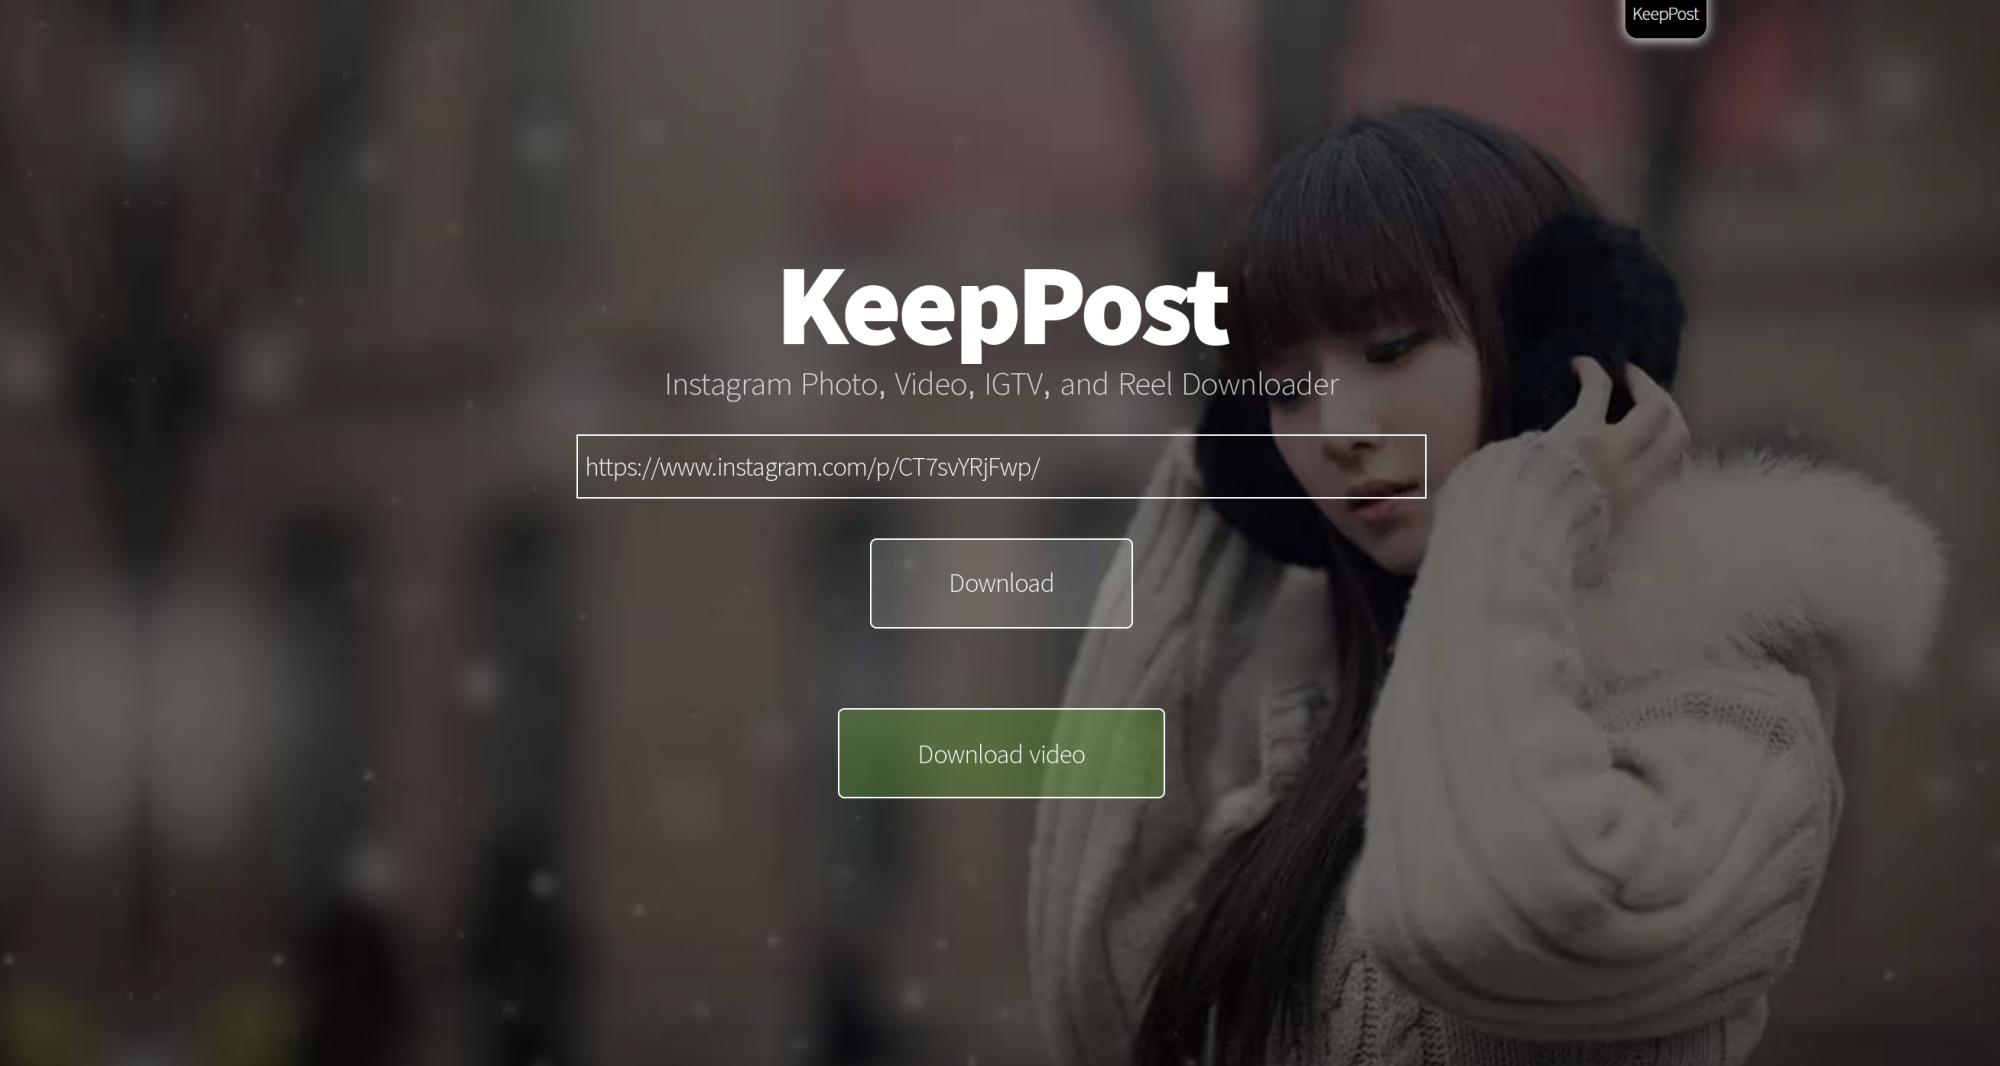 Aplikasi KeepPost Merupakan Salah Satu Cara Mendownload Video Dari Instagram
